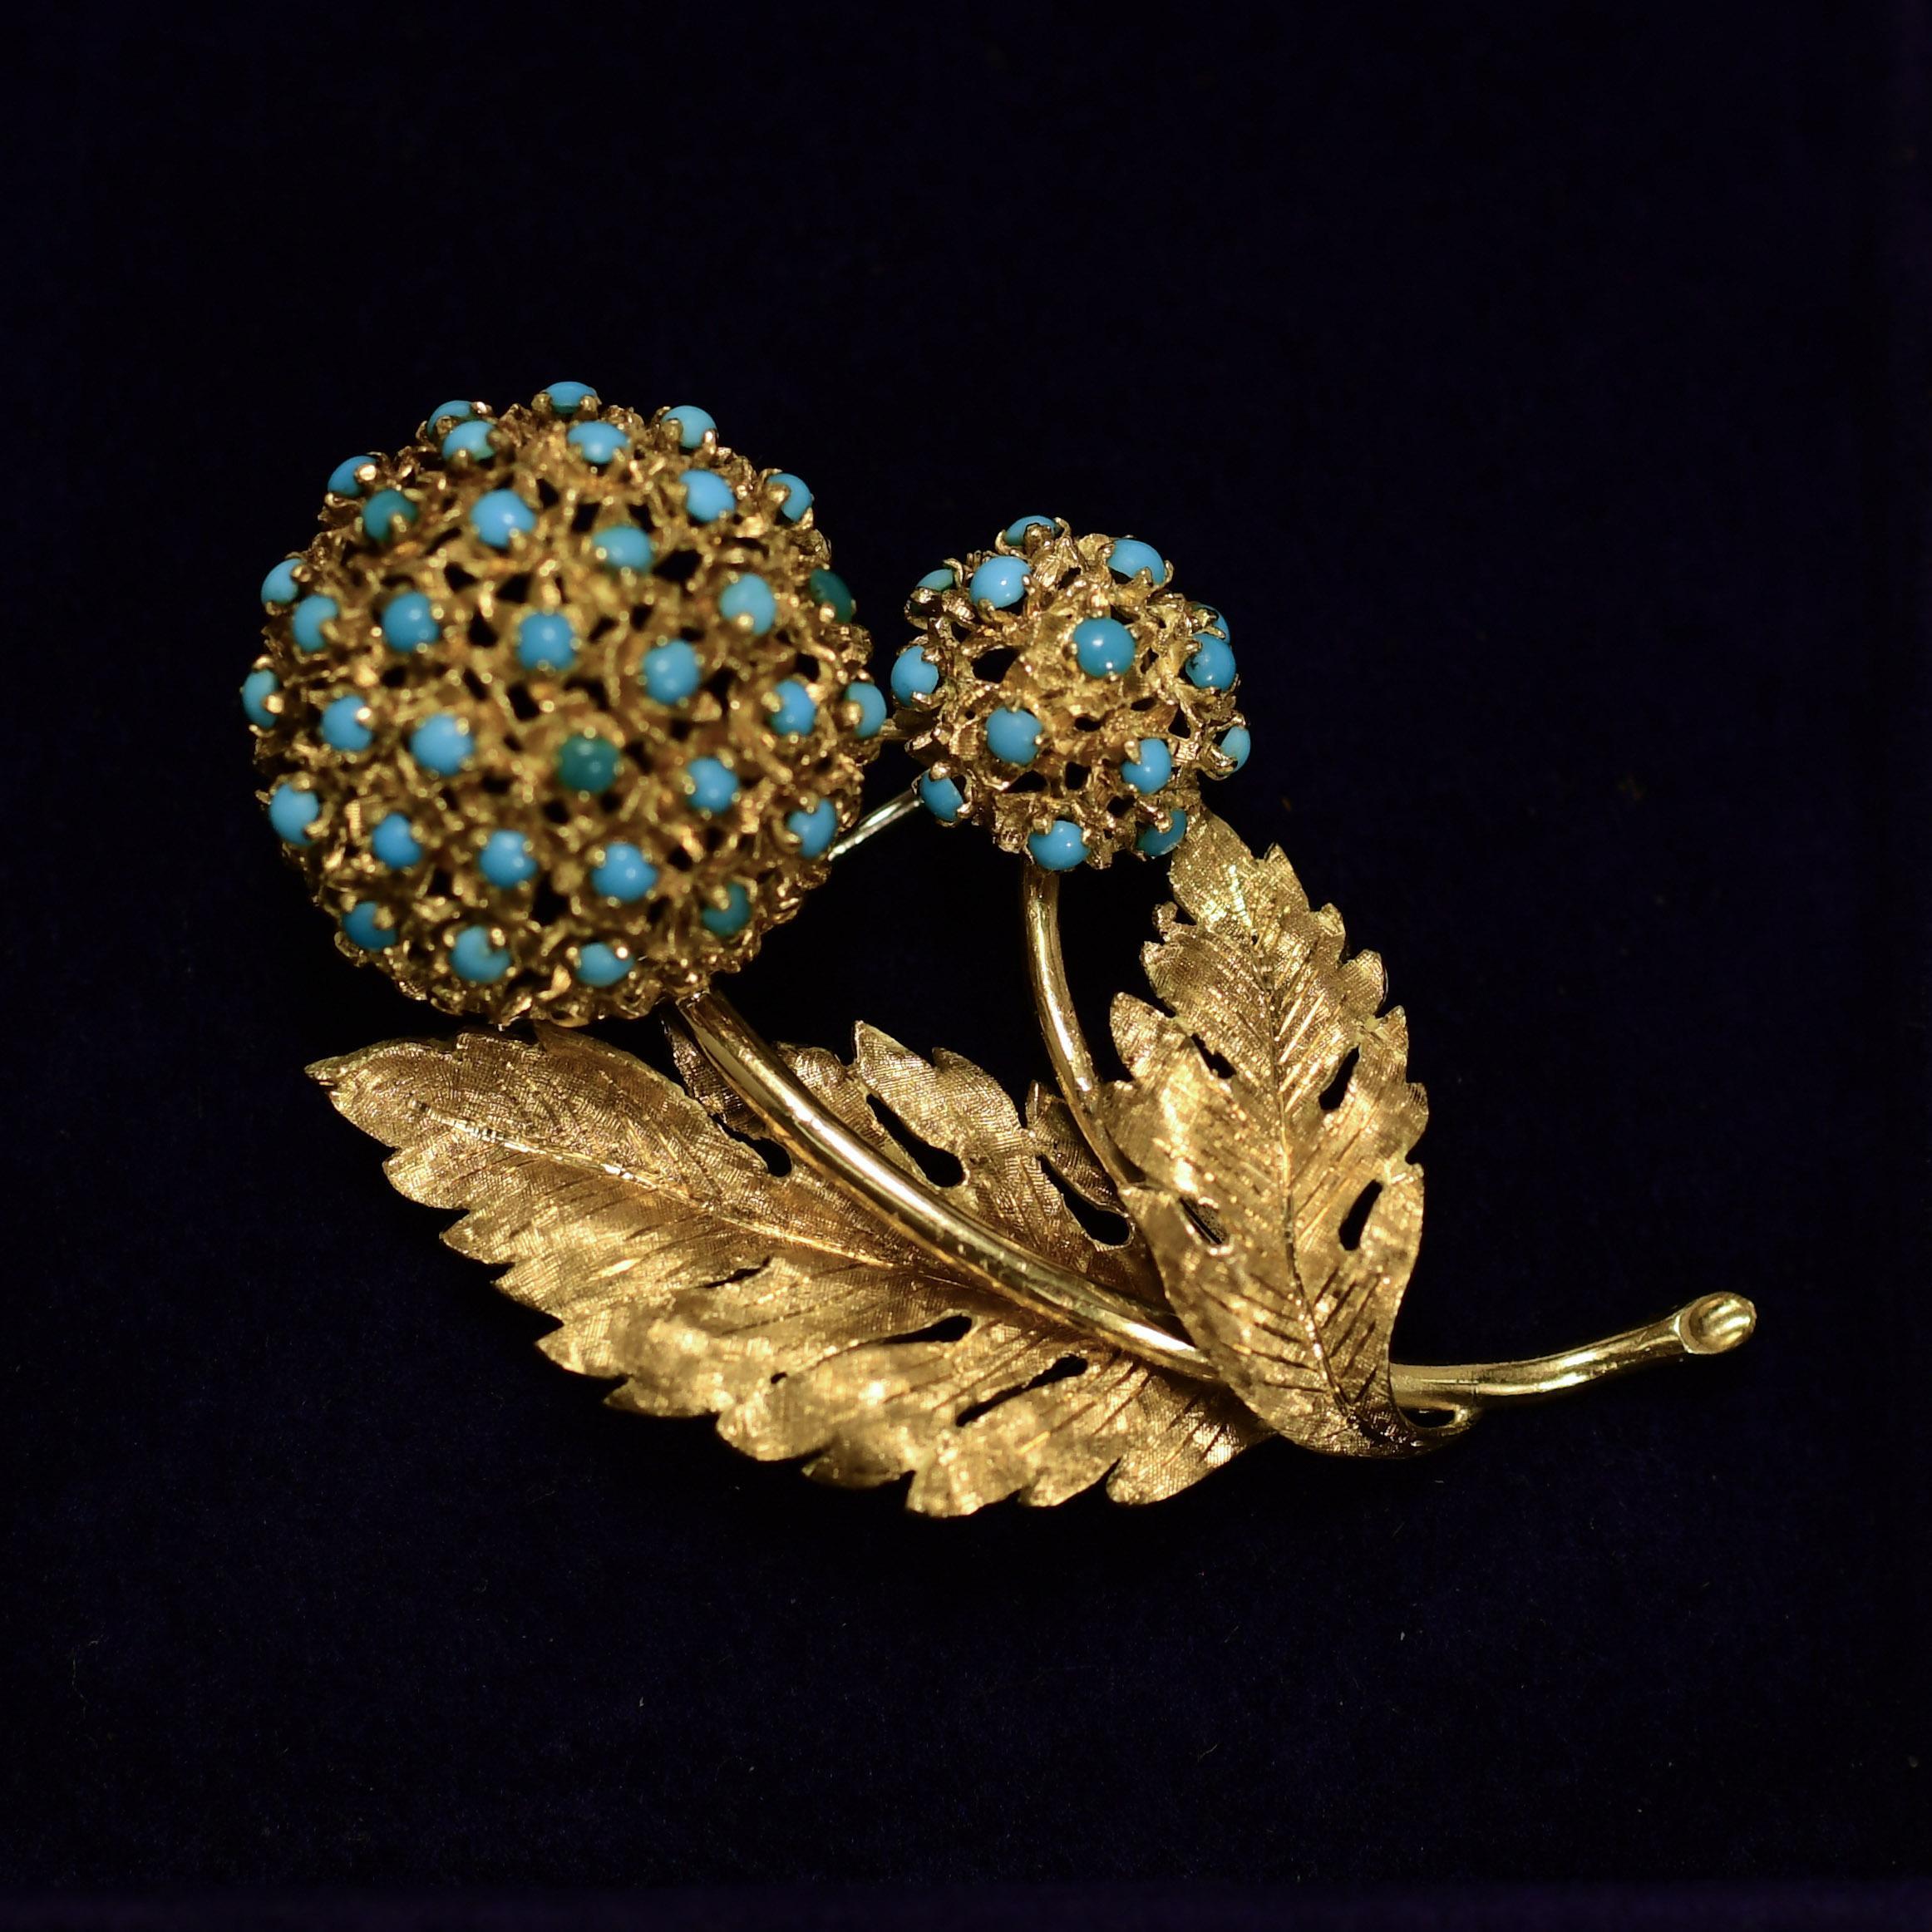 Cabochon Vintage Turquoise Floral Brooch 18K Gold For Sale